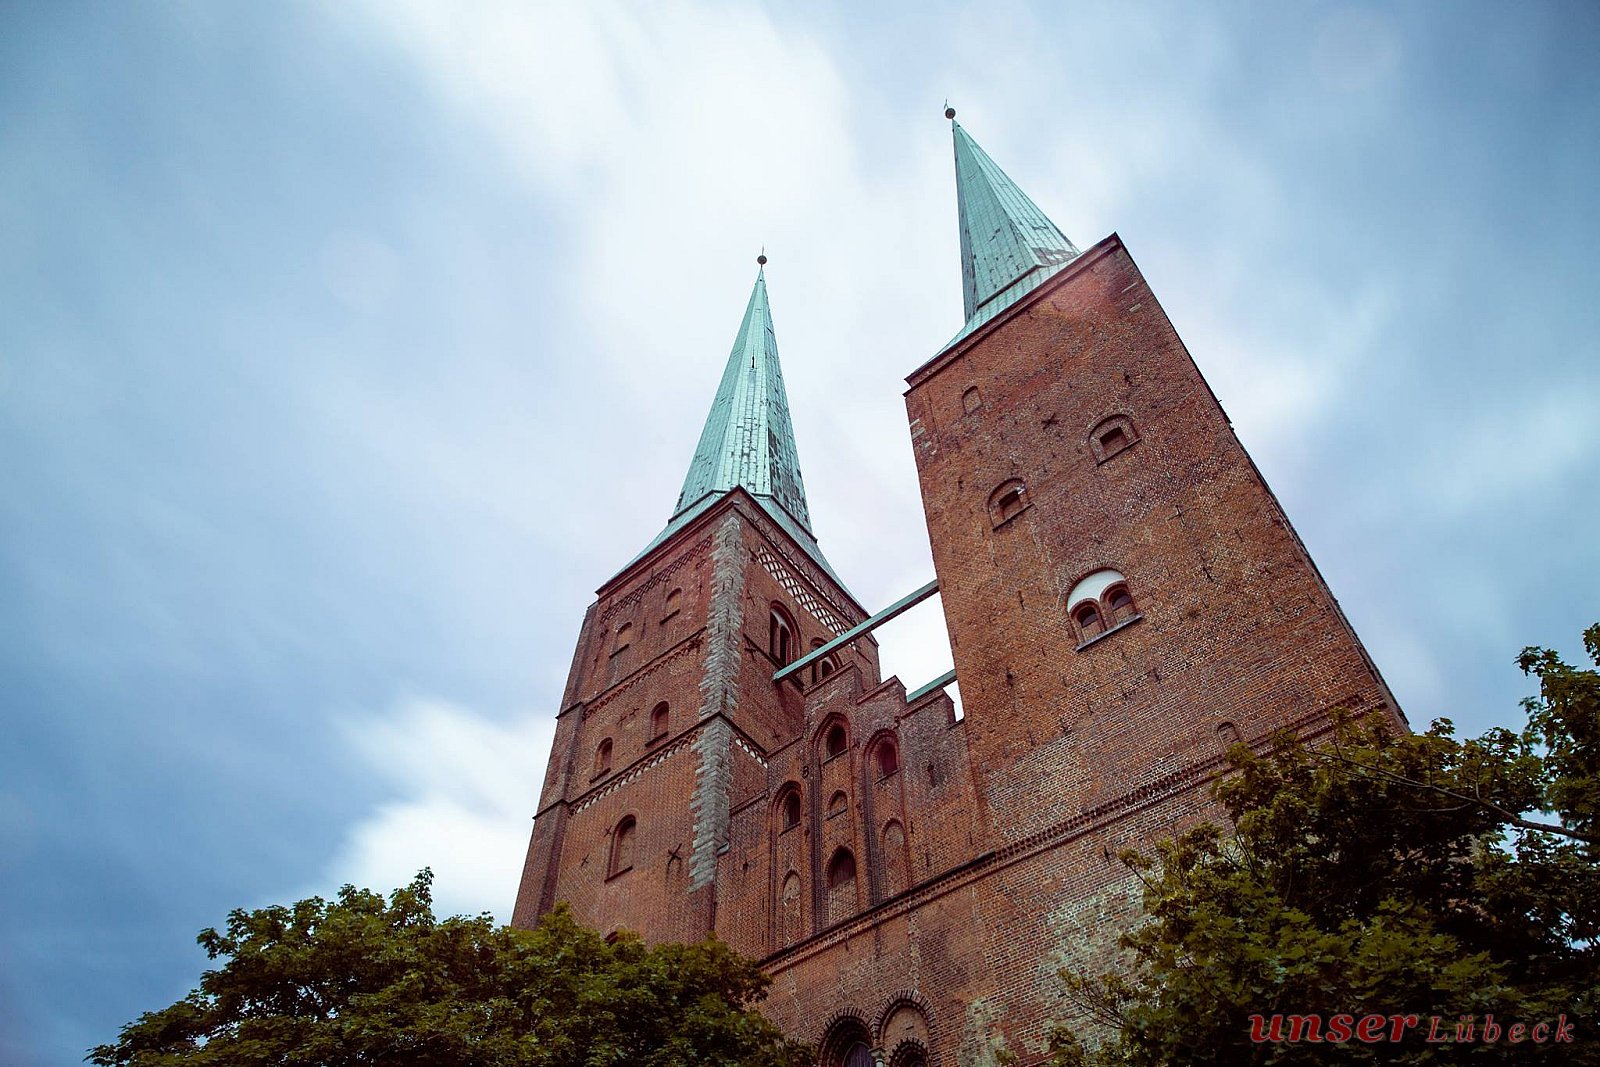 Dom zu Lübeck - Die schönsten Fotos von unseren Lesern